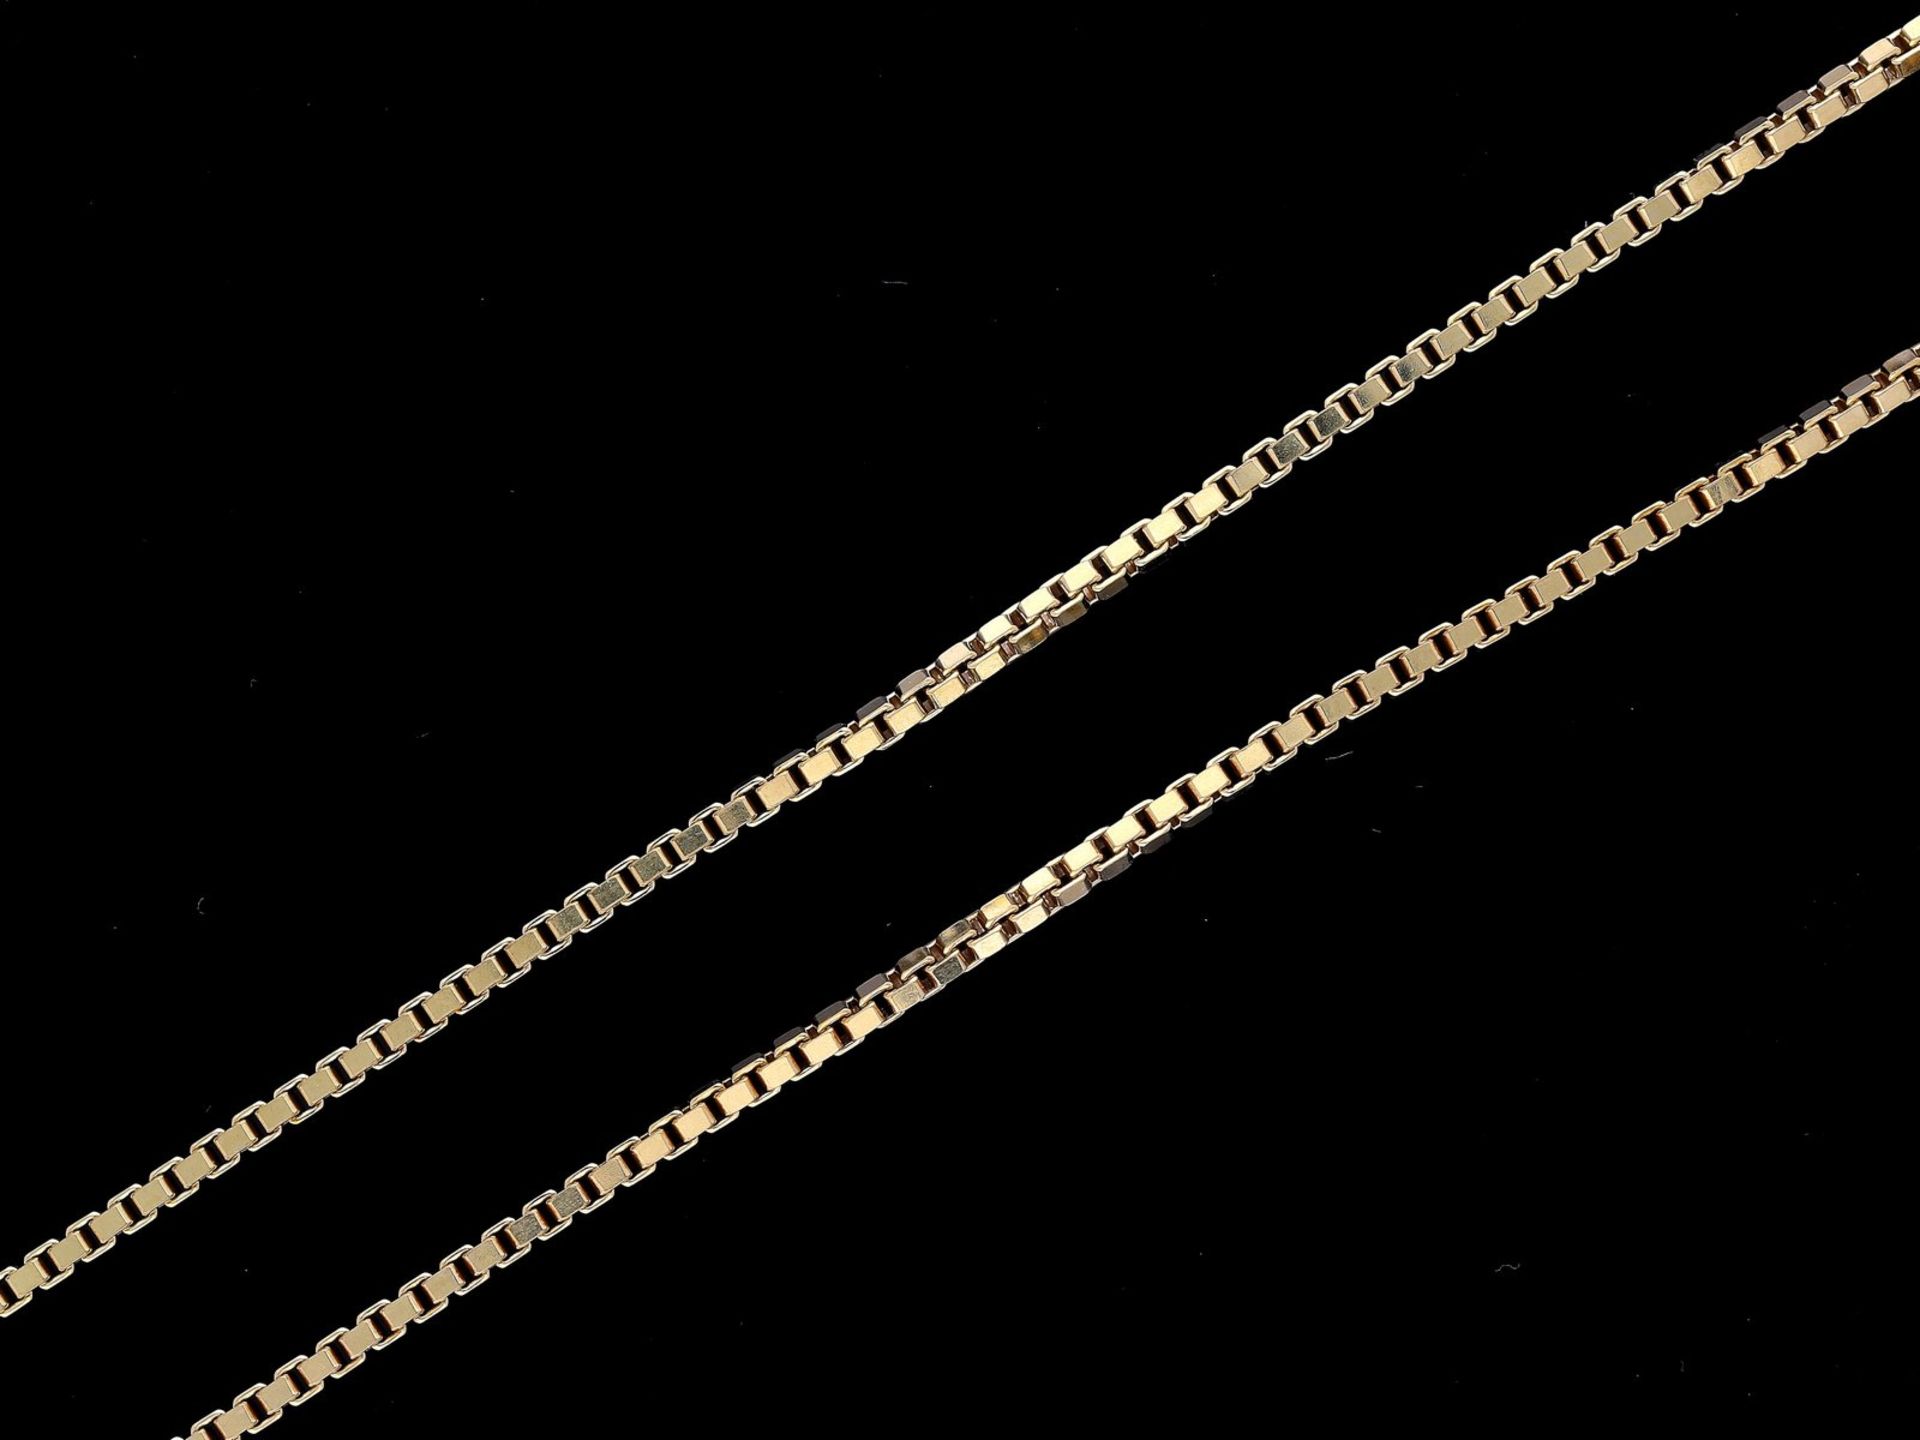 Kette/Collier: lange Goldkette im Venezianer-Muster, neuwertig und ungetragenCa. 57cm lang, ca. 19,